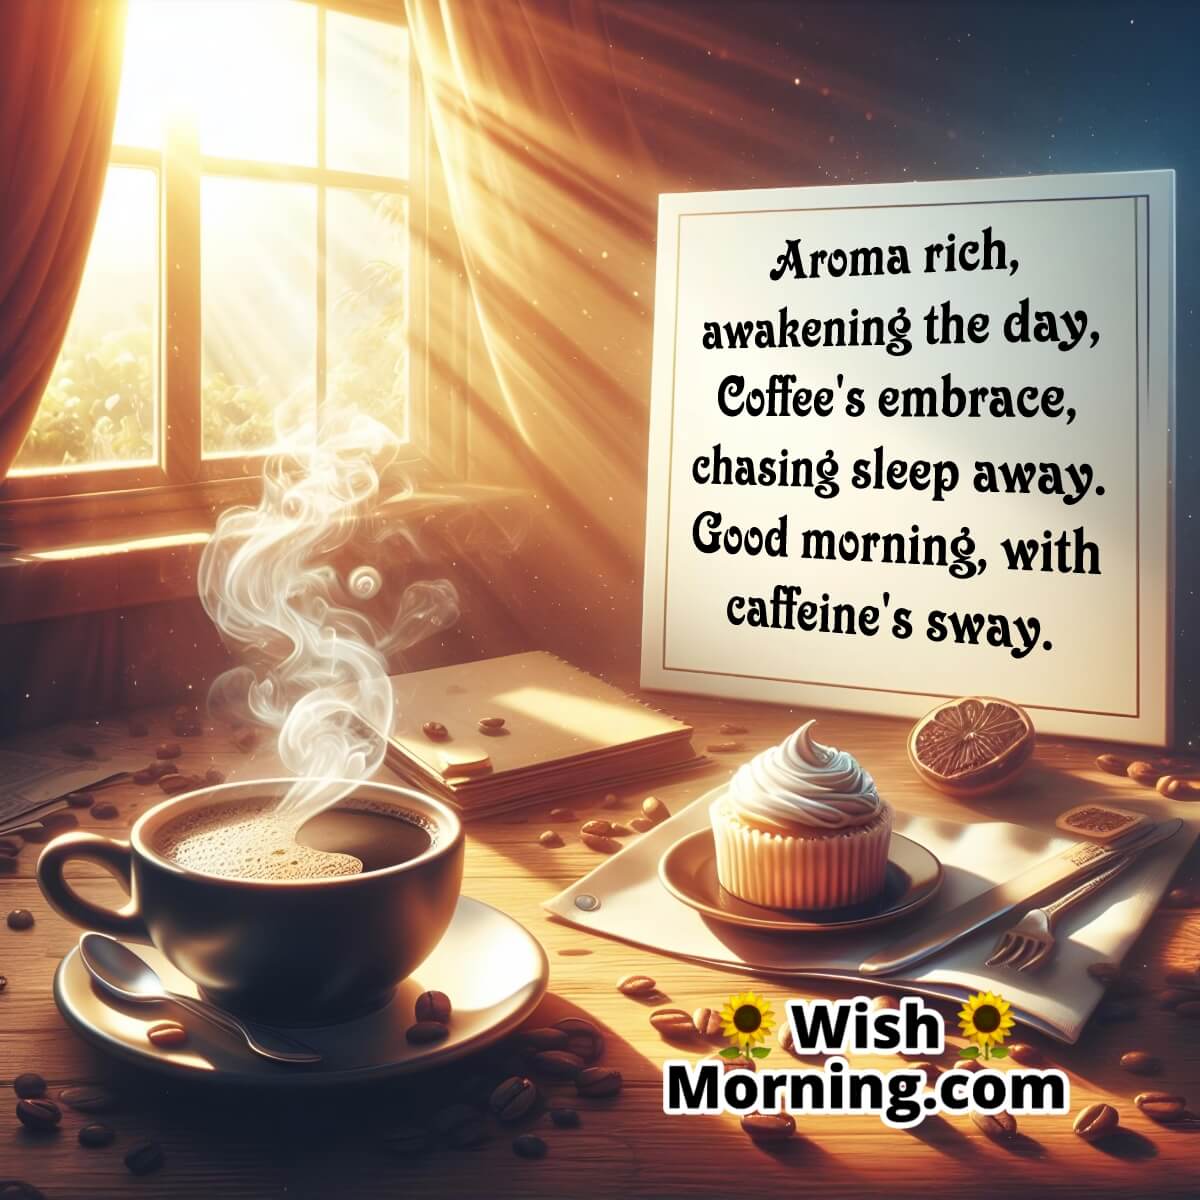 Morning Aromatic Awakening